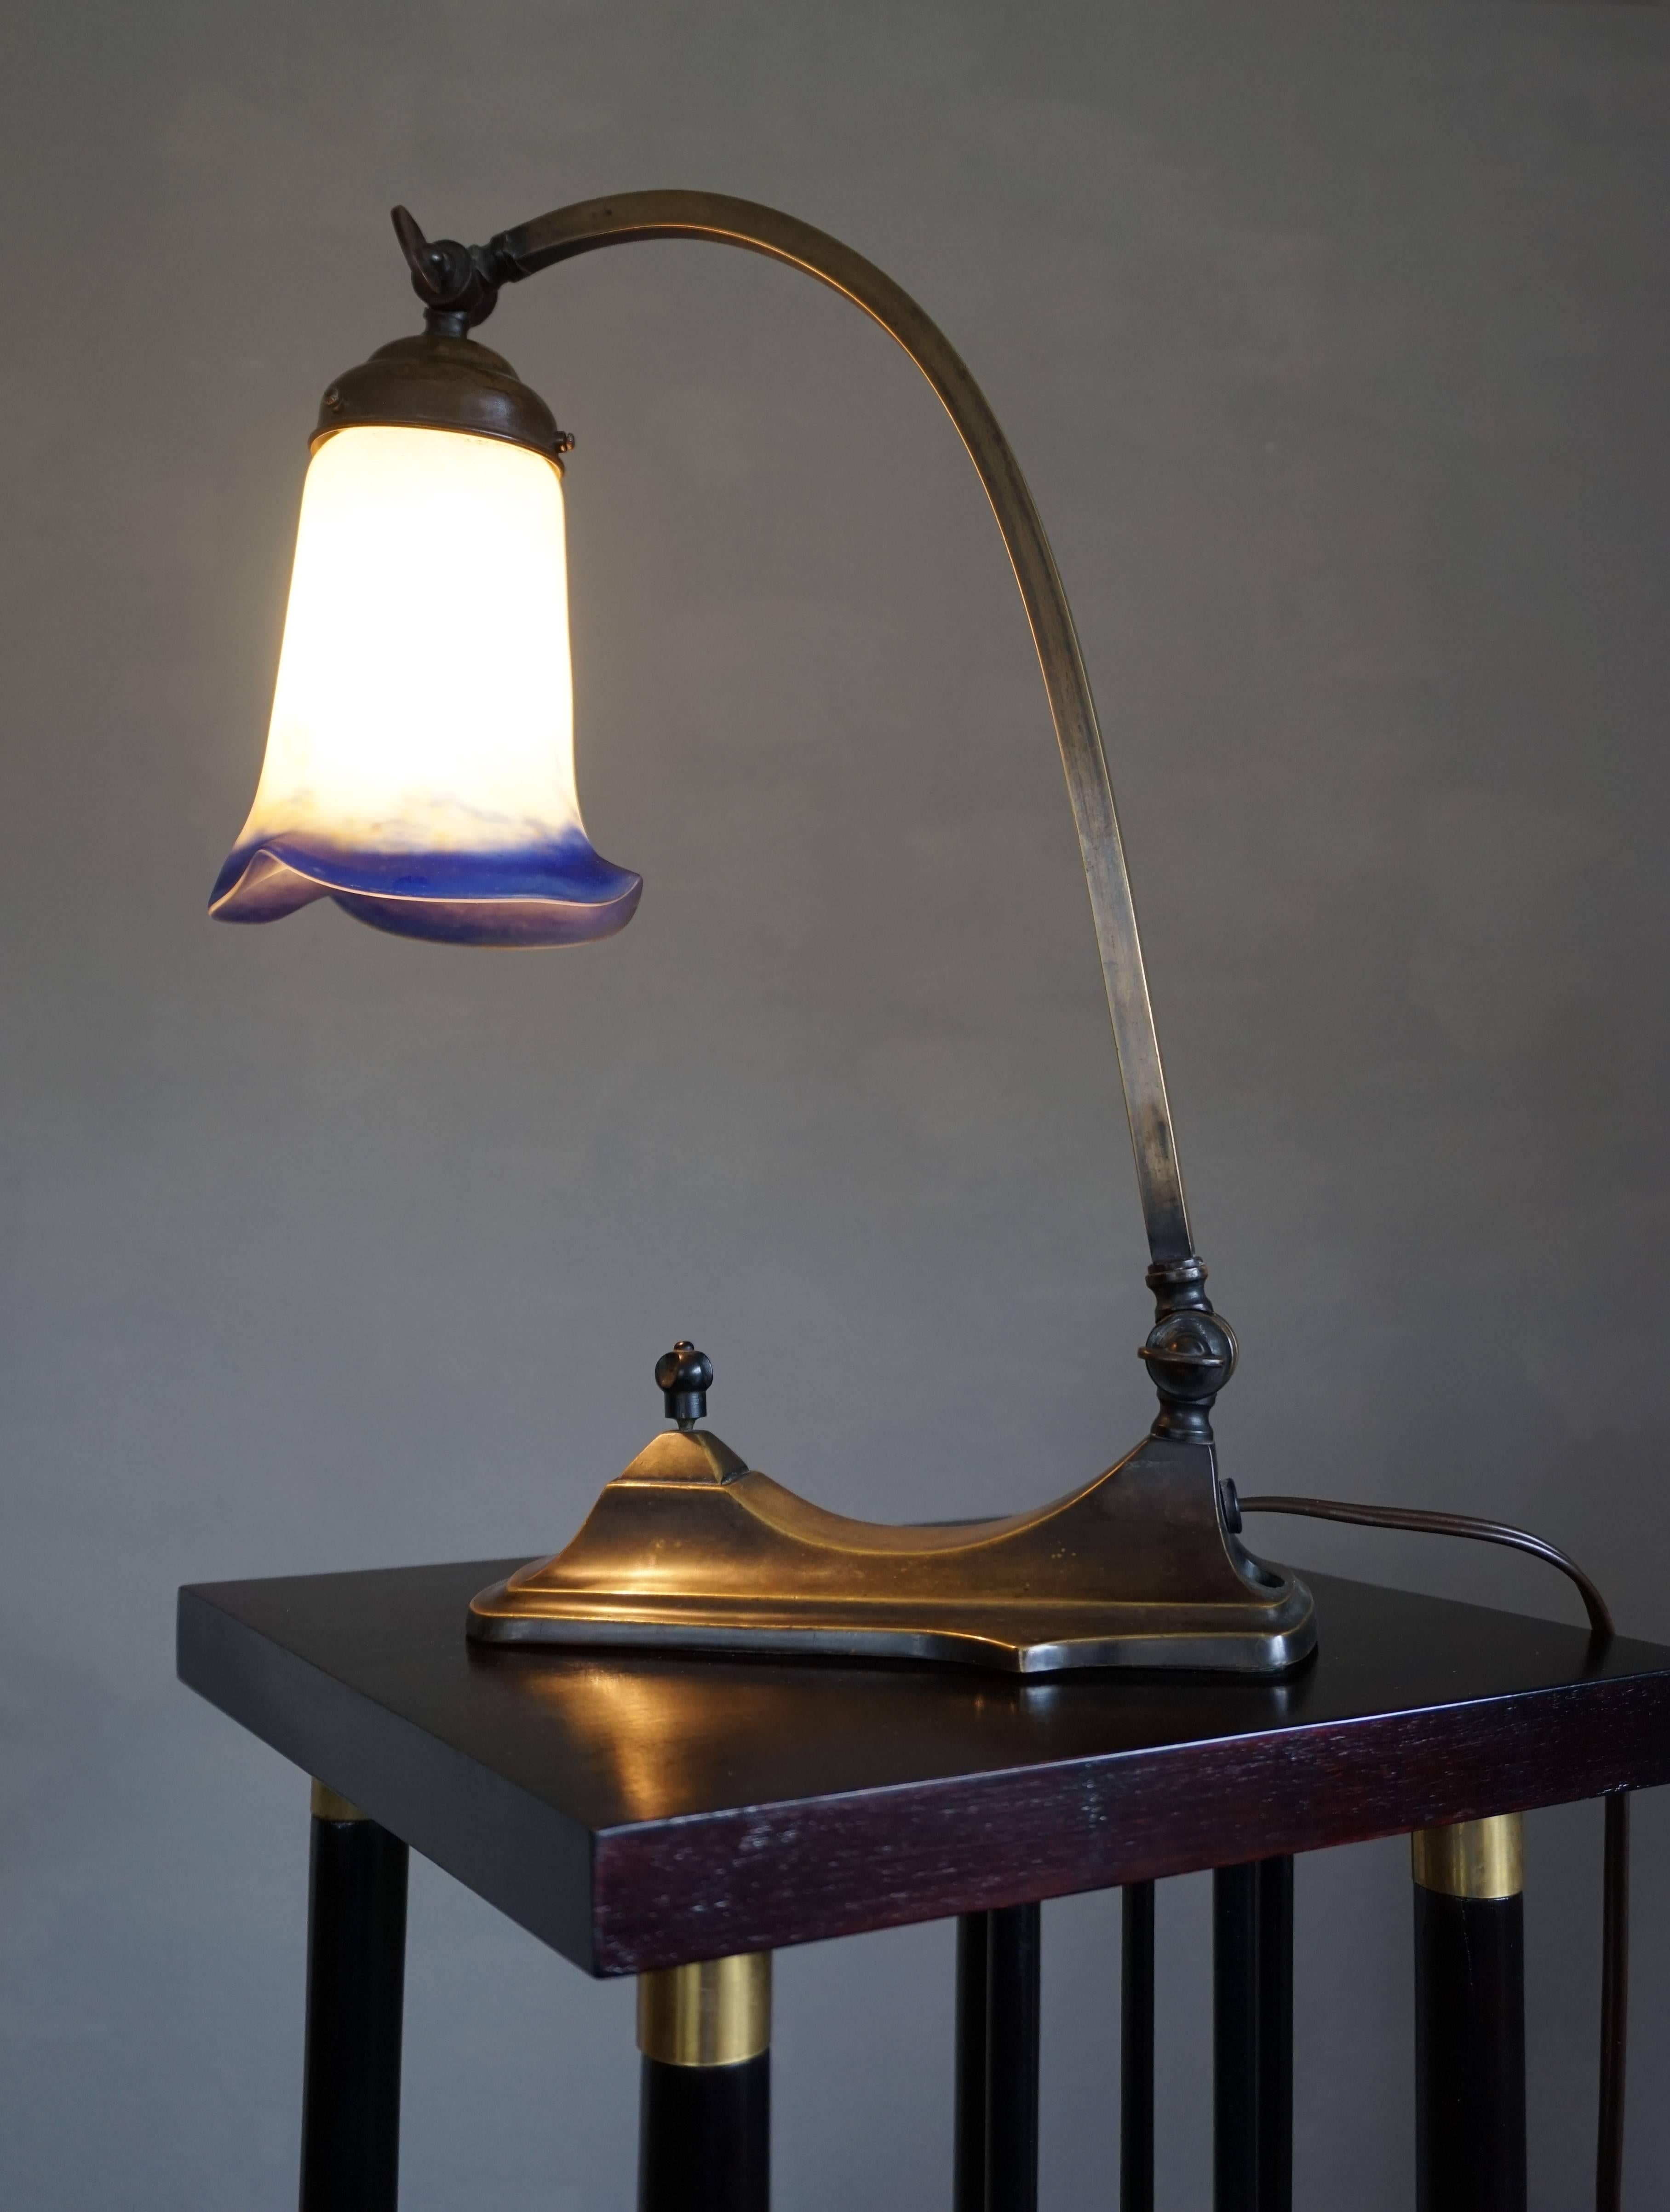 Lampe de table française très bien conçue et de qualité supérieure.

Cette lampe de table Art déco rare et élégante est un plaisir à regarder, que la lumière soit allumée ou éteinte. Avec un bras et un abat-jour réglables, cette lampe est également